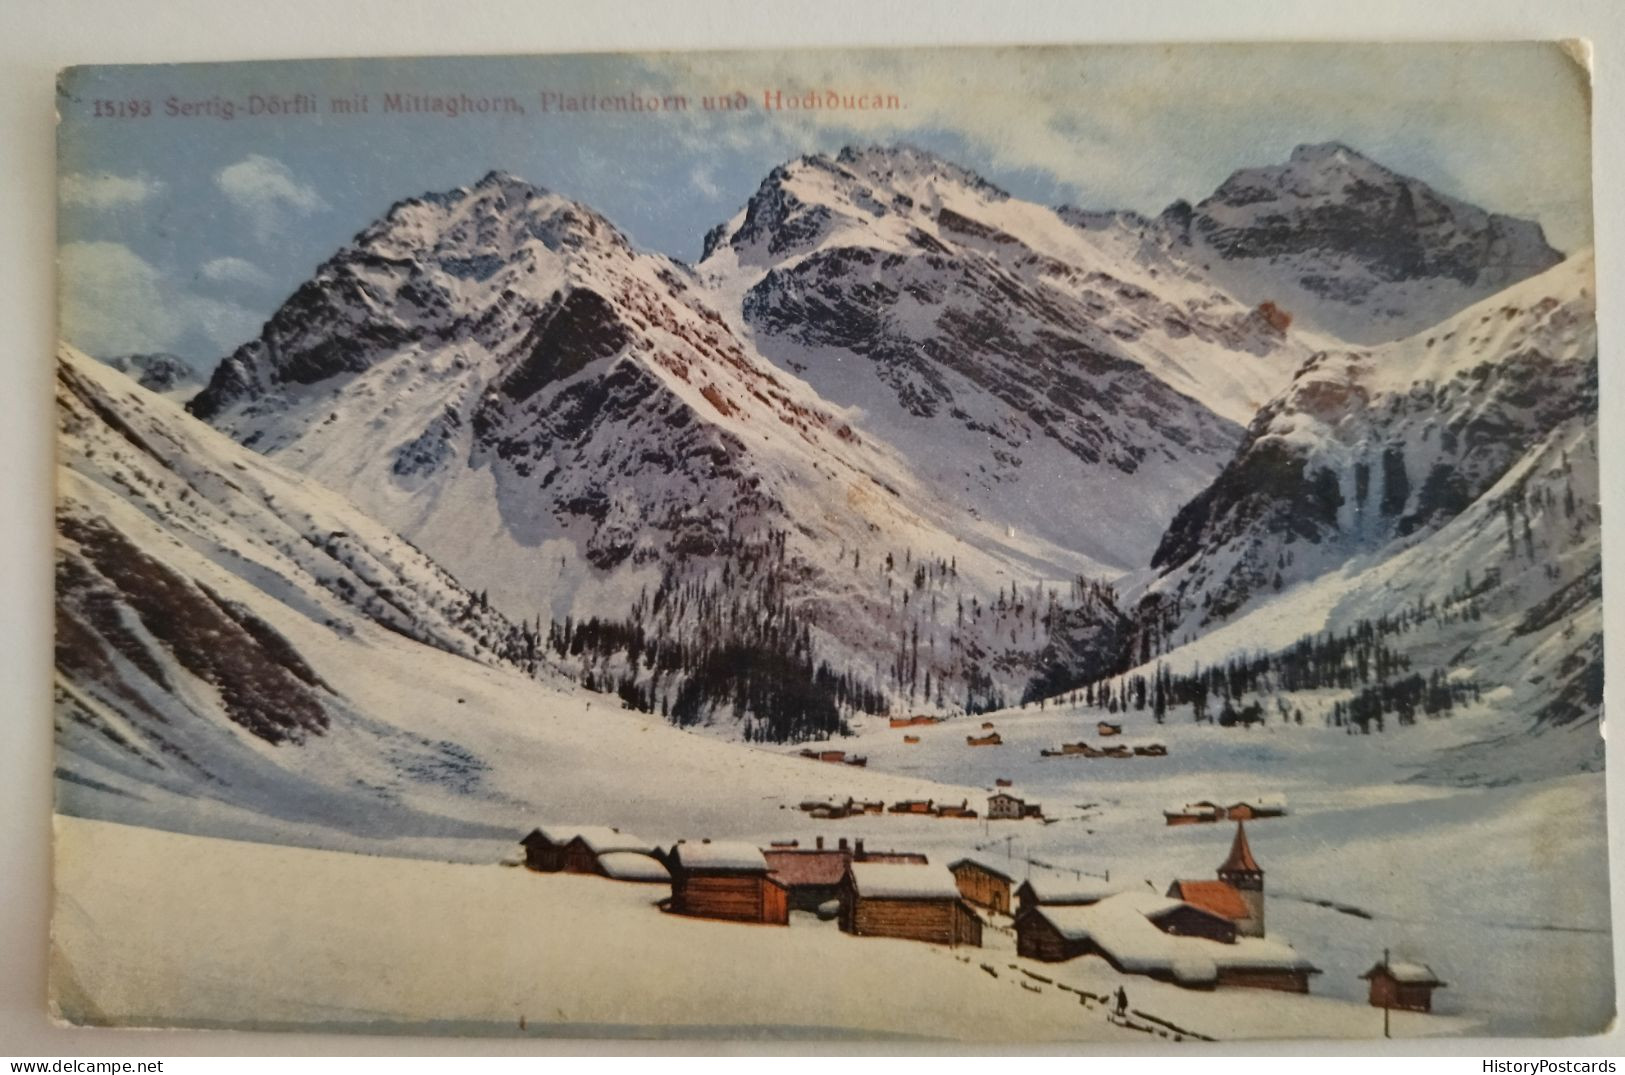 Sertig-Dörfli Mit Mittaghorn, Plattenhorn U. Hochducan, 1918 - Davos